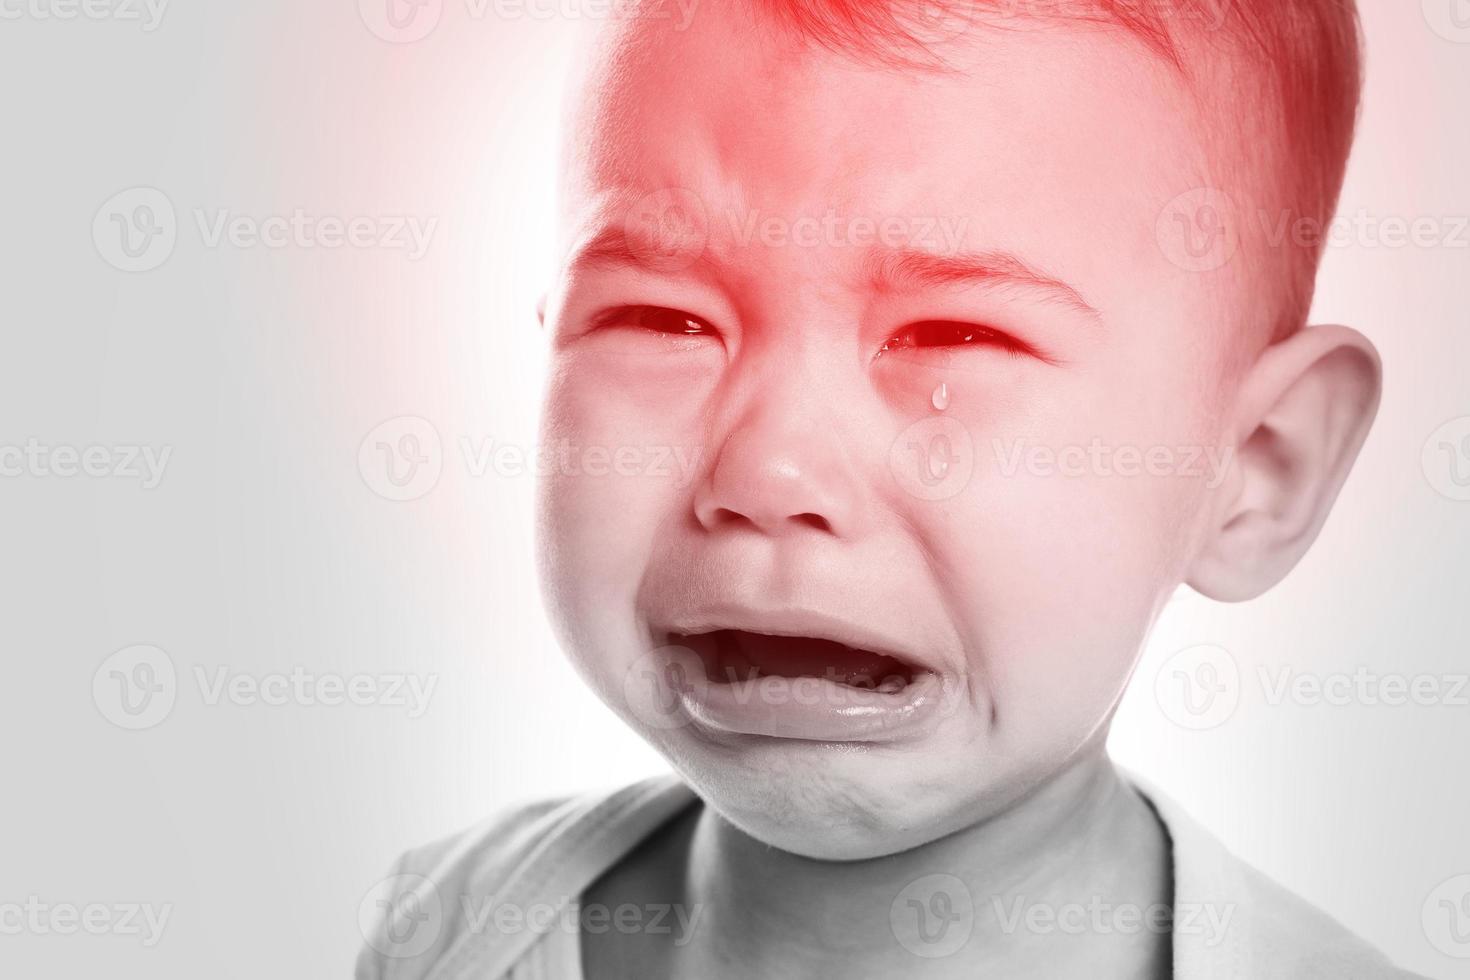 pequeño bebé llorando que sufre de dolor de cabeza foto